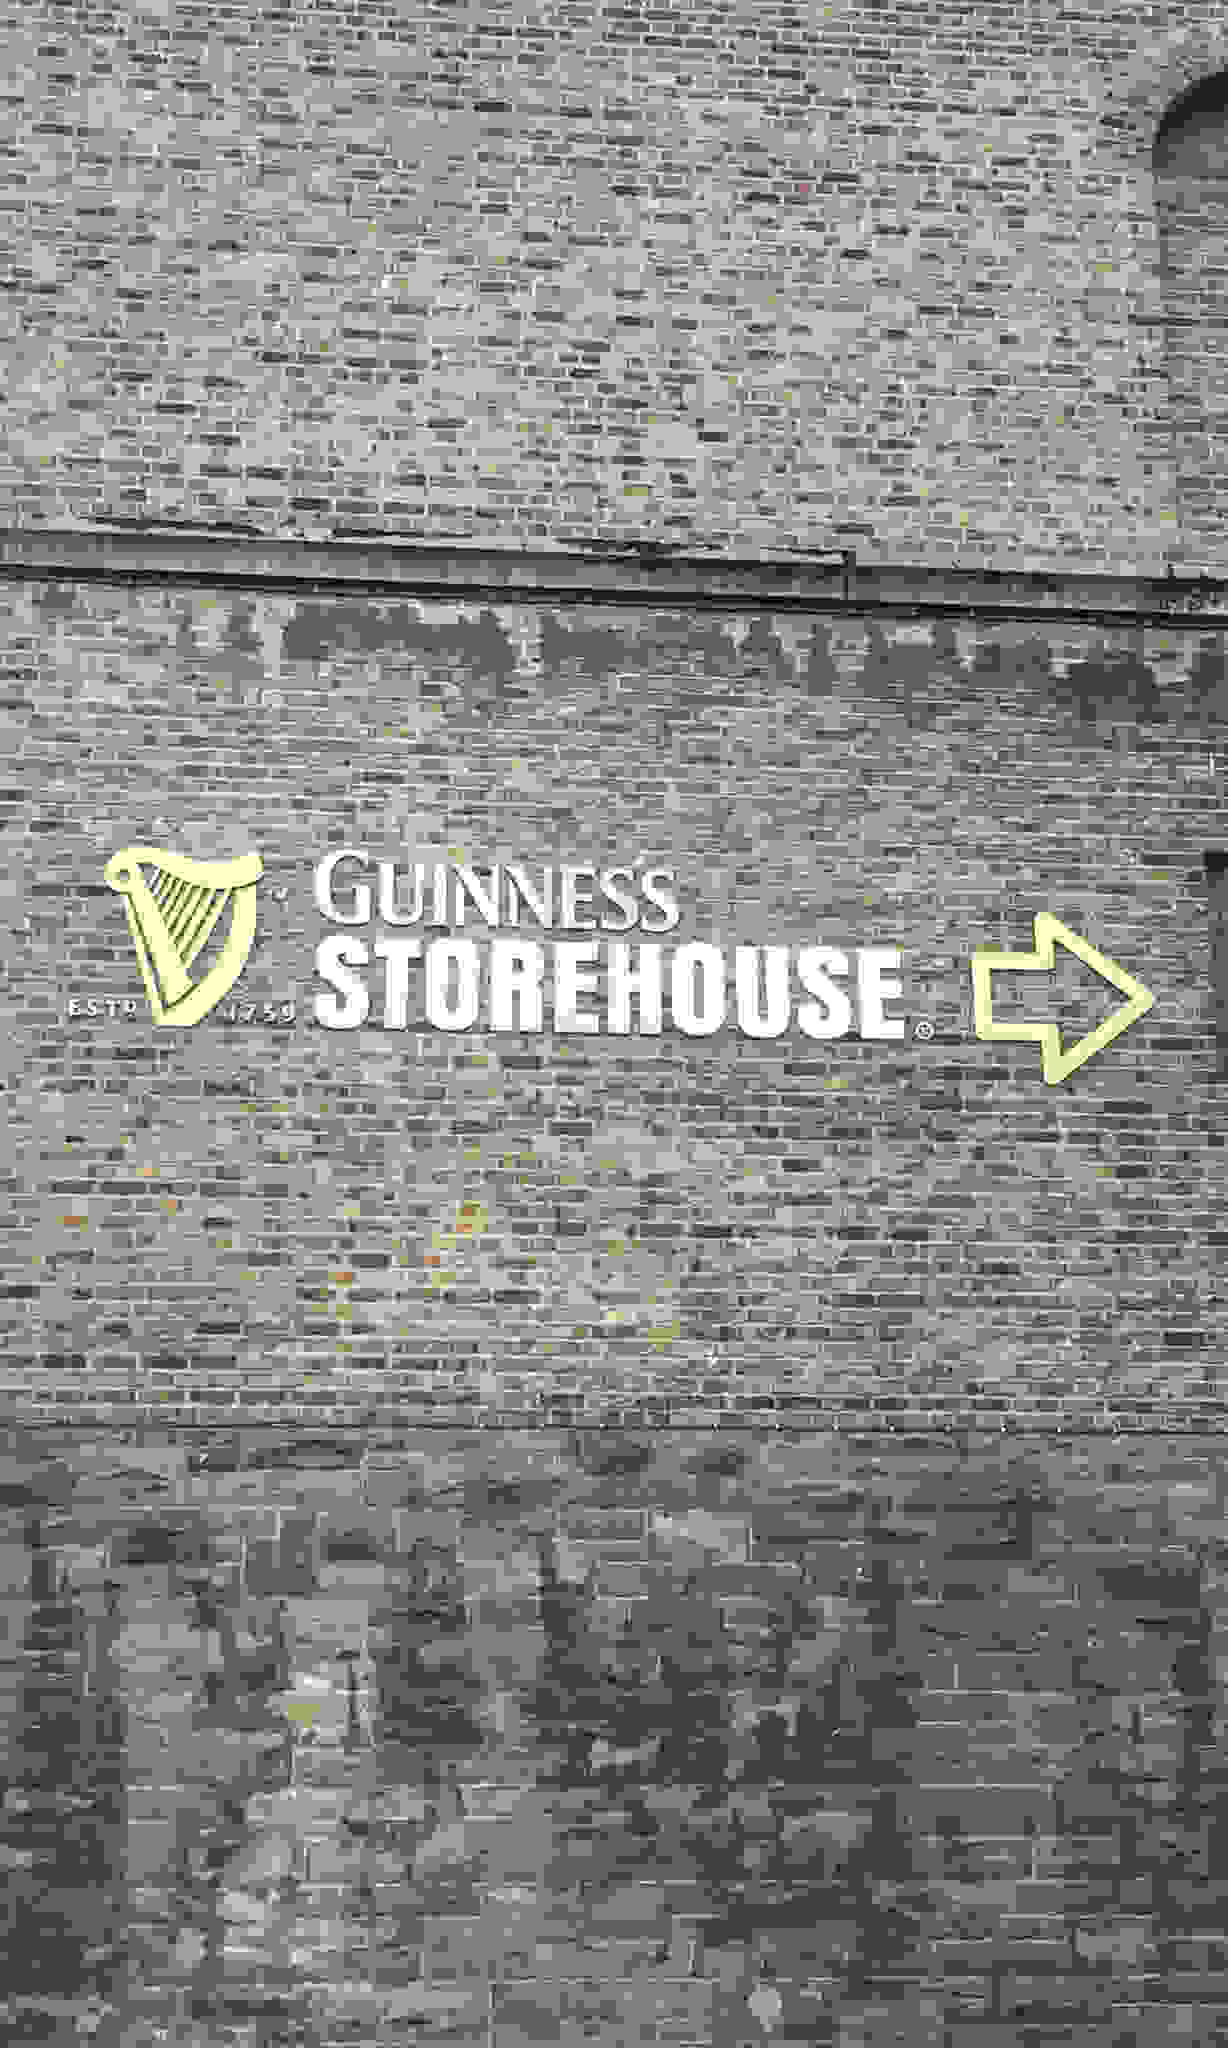 guinness storehouse dublin